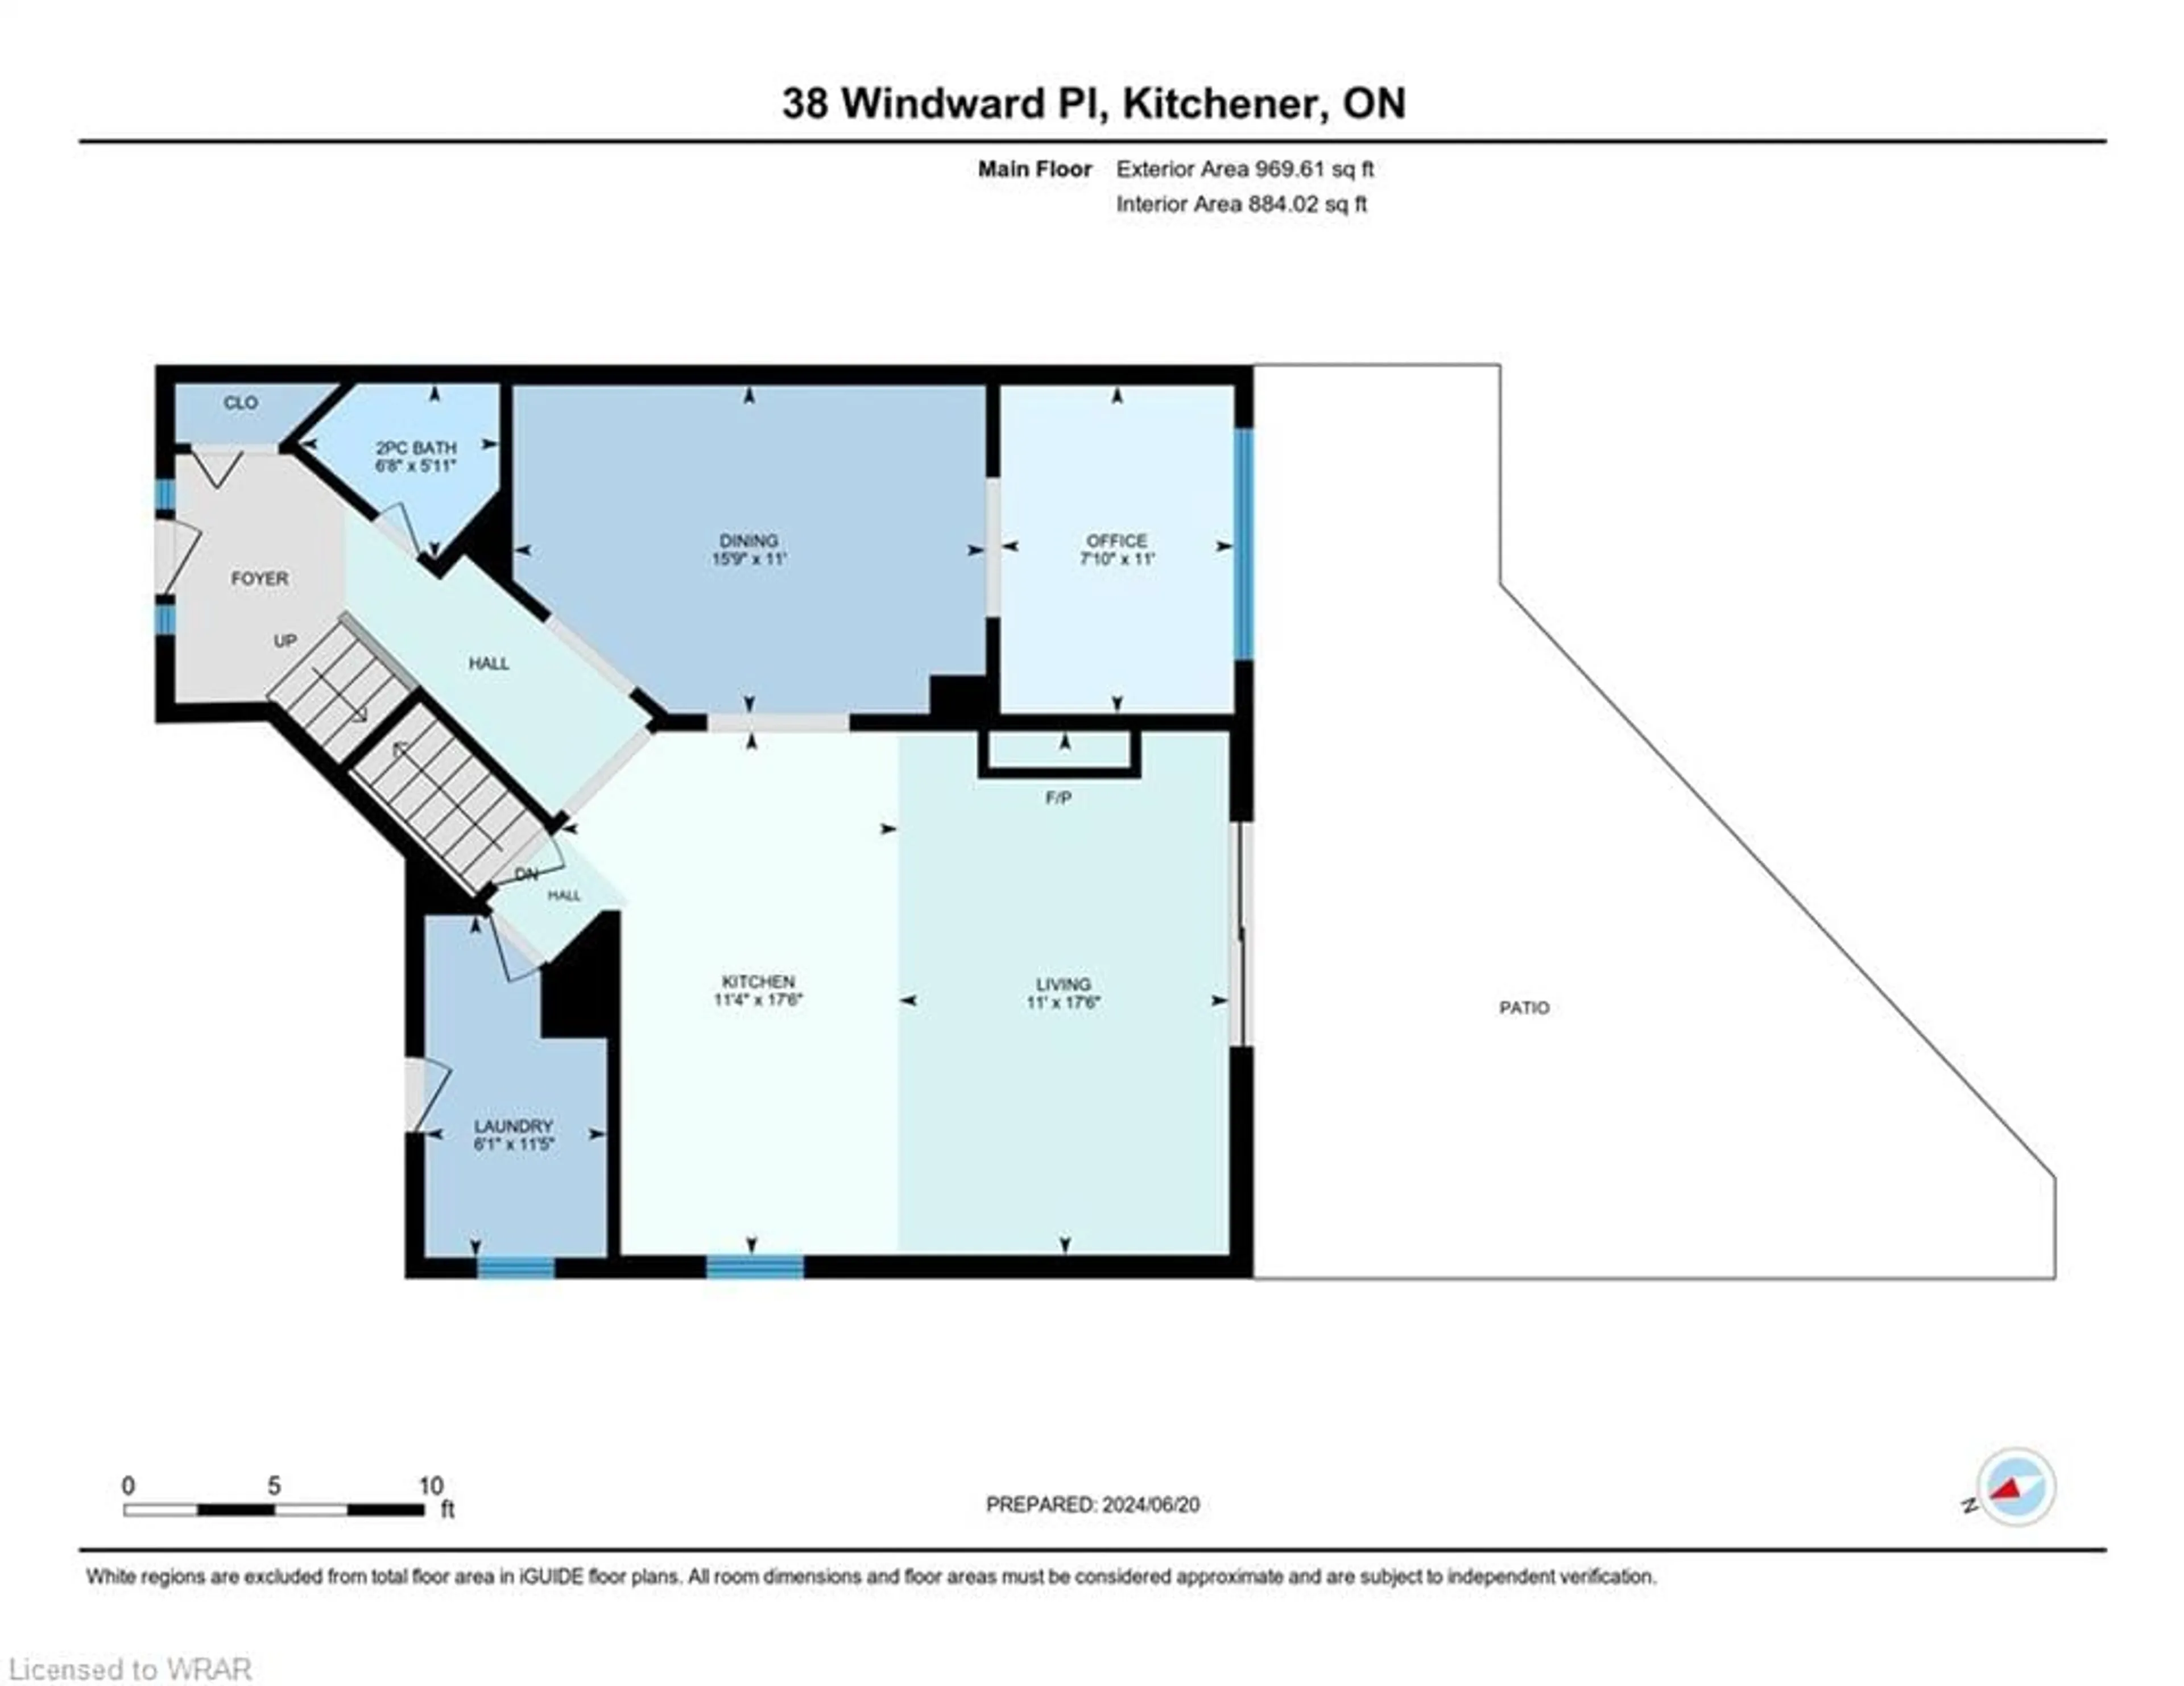 Floor plan for 38 Windward Pl, Kitchener Ontario N2N 3H8